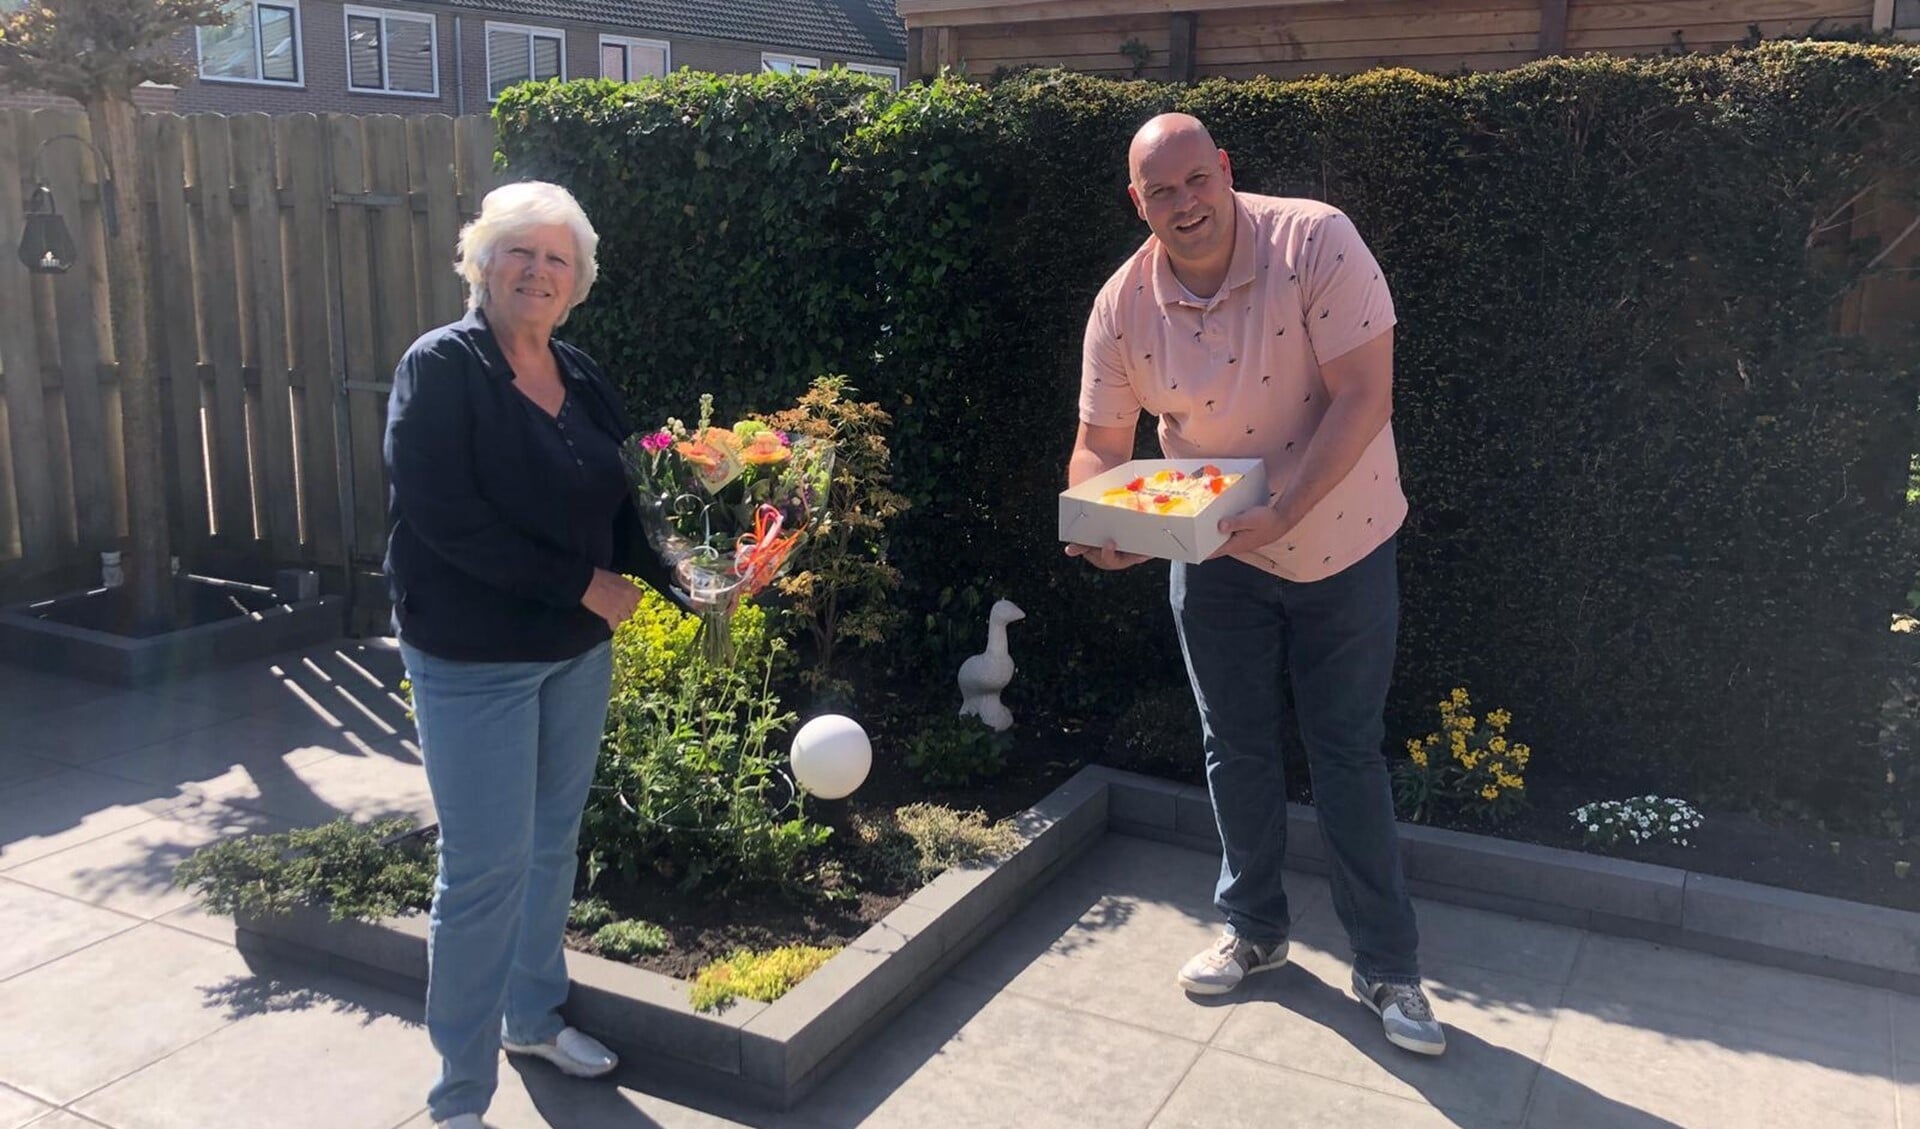 Loco-burgemeester Anne-Marie Kennis bracht de nieuwe 'ridder' vanmiddag taart en bloemen.